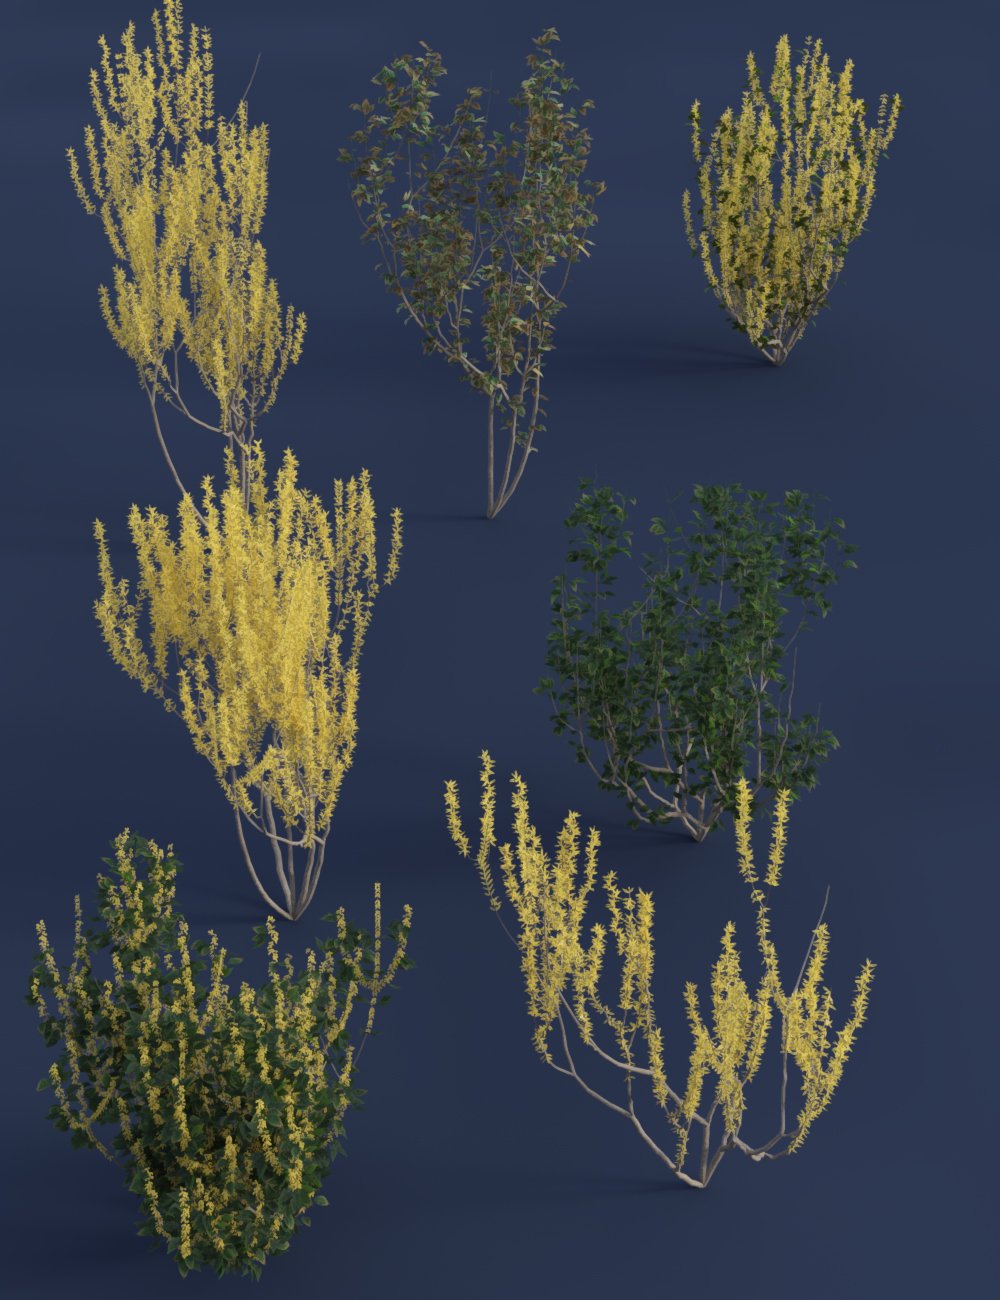 Spring Flowering Shrubs - Golden Forsythia by: MartinJFrost, 3D Models by Daz 3D